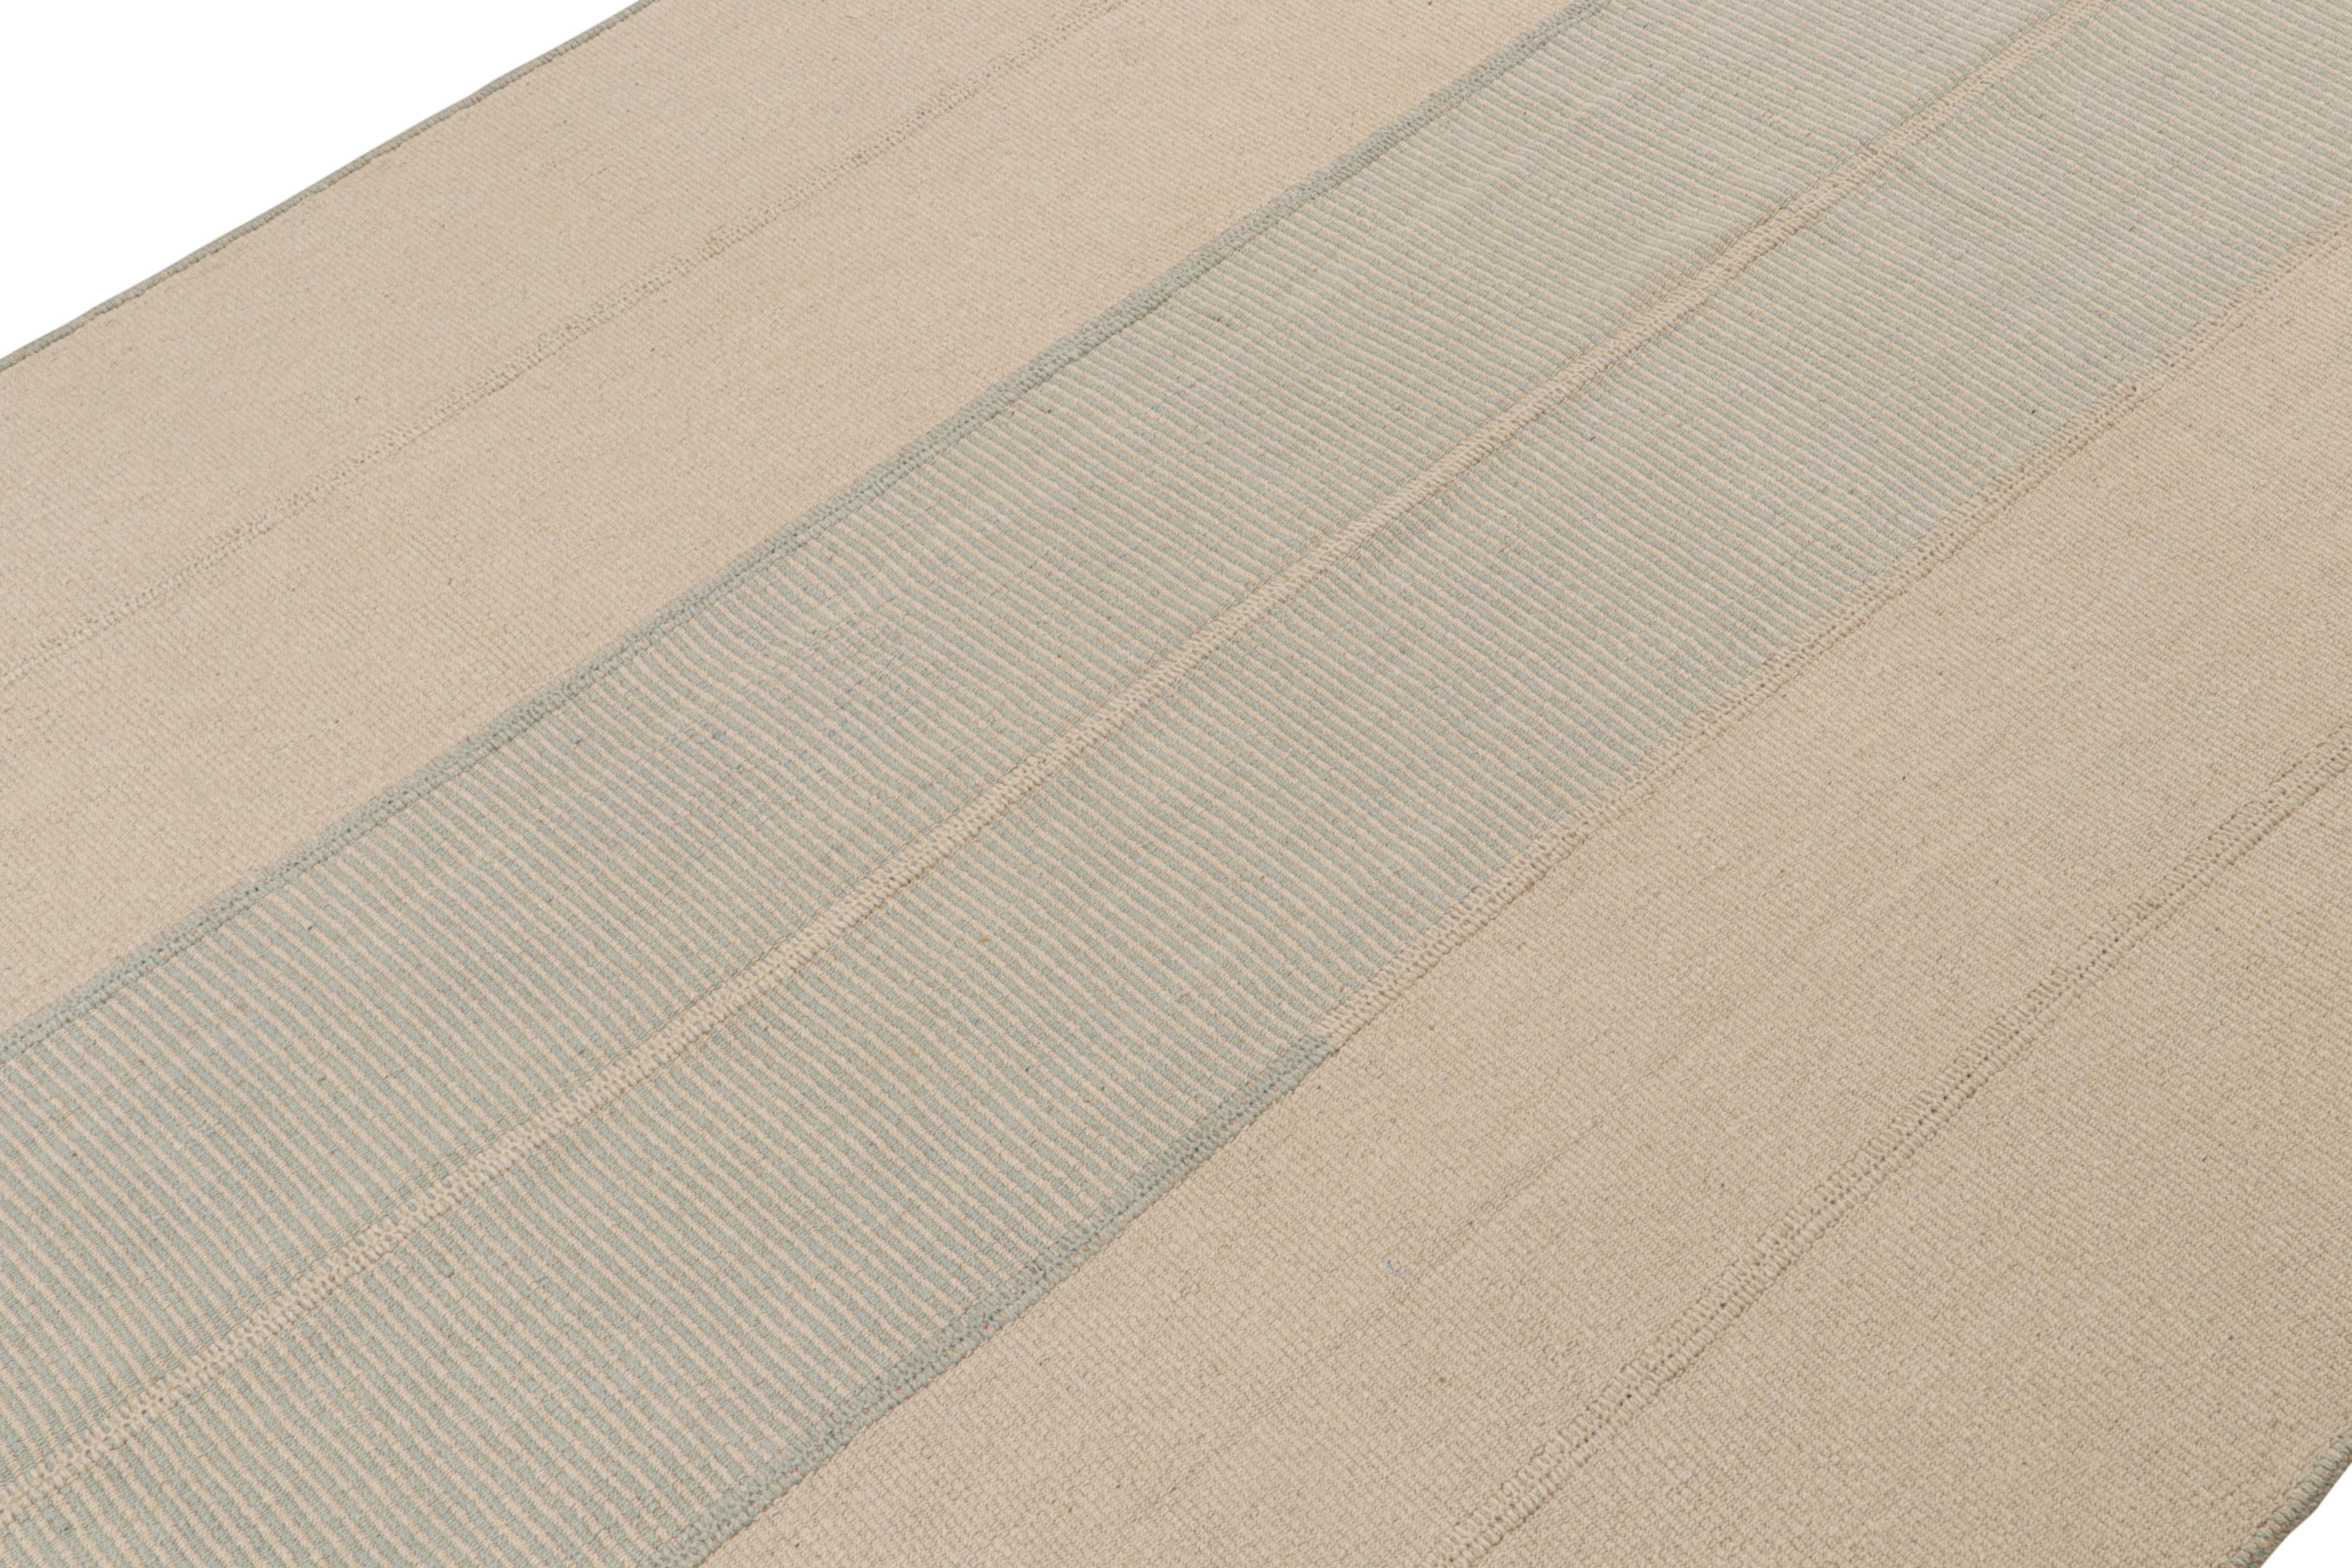 Handgewebte Wolle, ein 9x12-Kilim-Design aus einer originellen neuen zeitgenössischen Flachgewebe-Kollektion von Rug & Kilim.

Über das Design: 

Die liebevoll als Rez Kilims